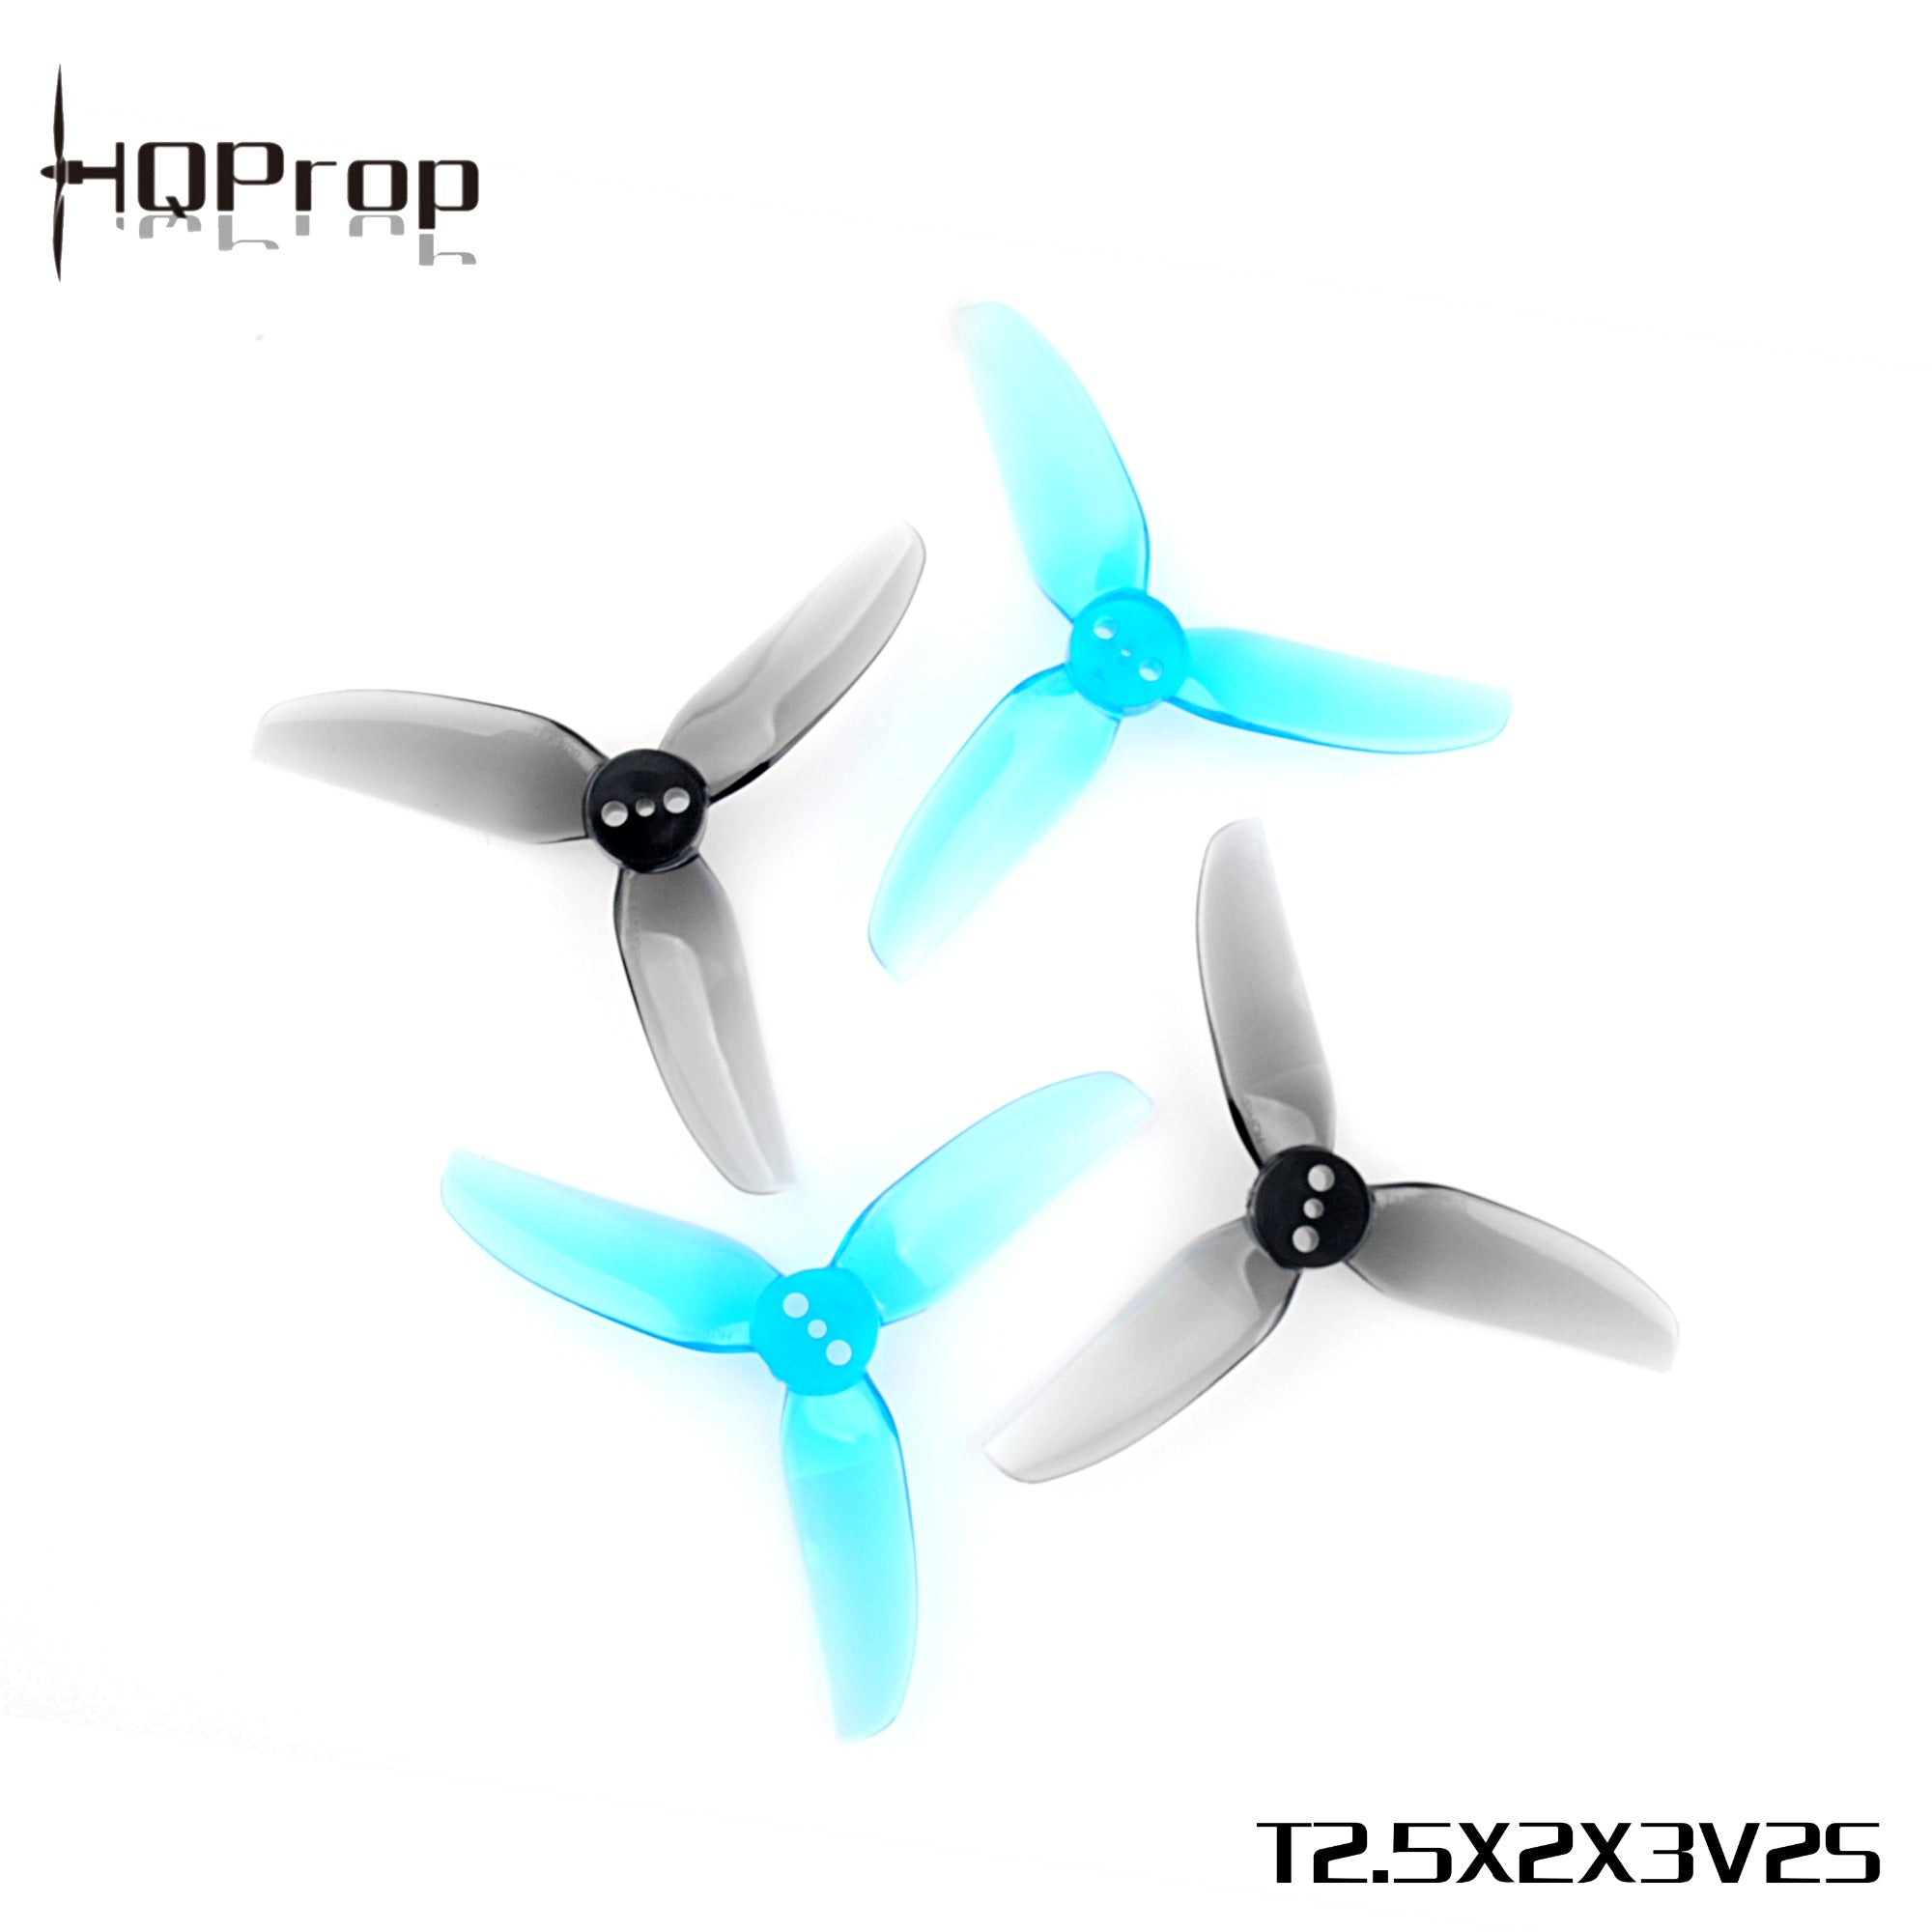 HQProp T2.5X2X3V2S 2.5" Propellers (2CW+2CCW)